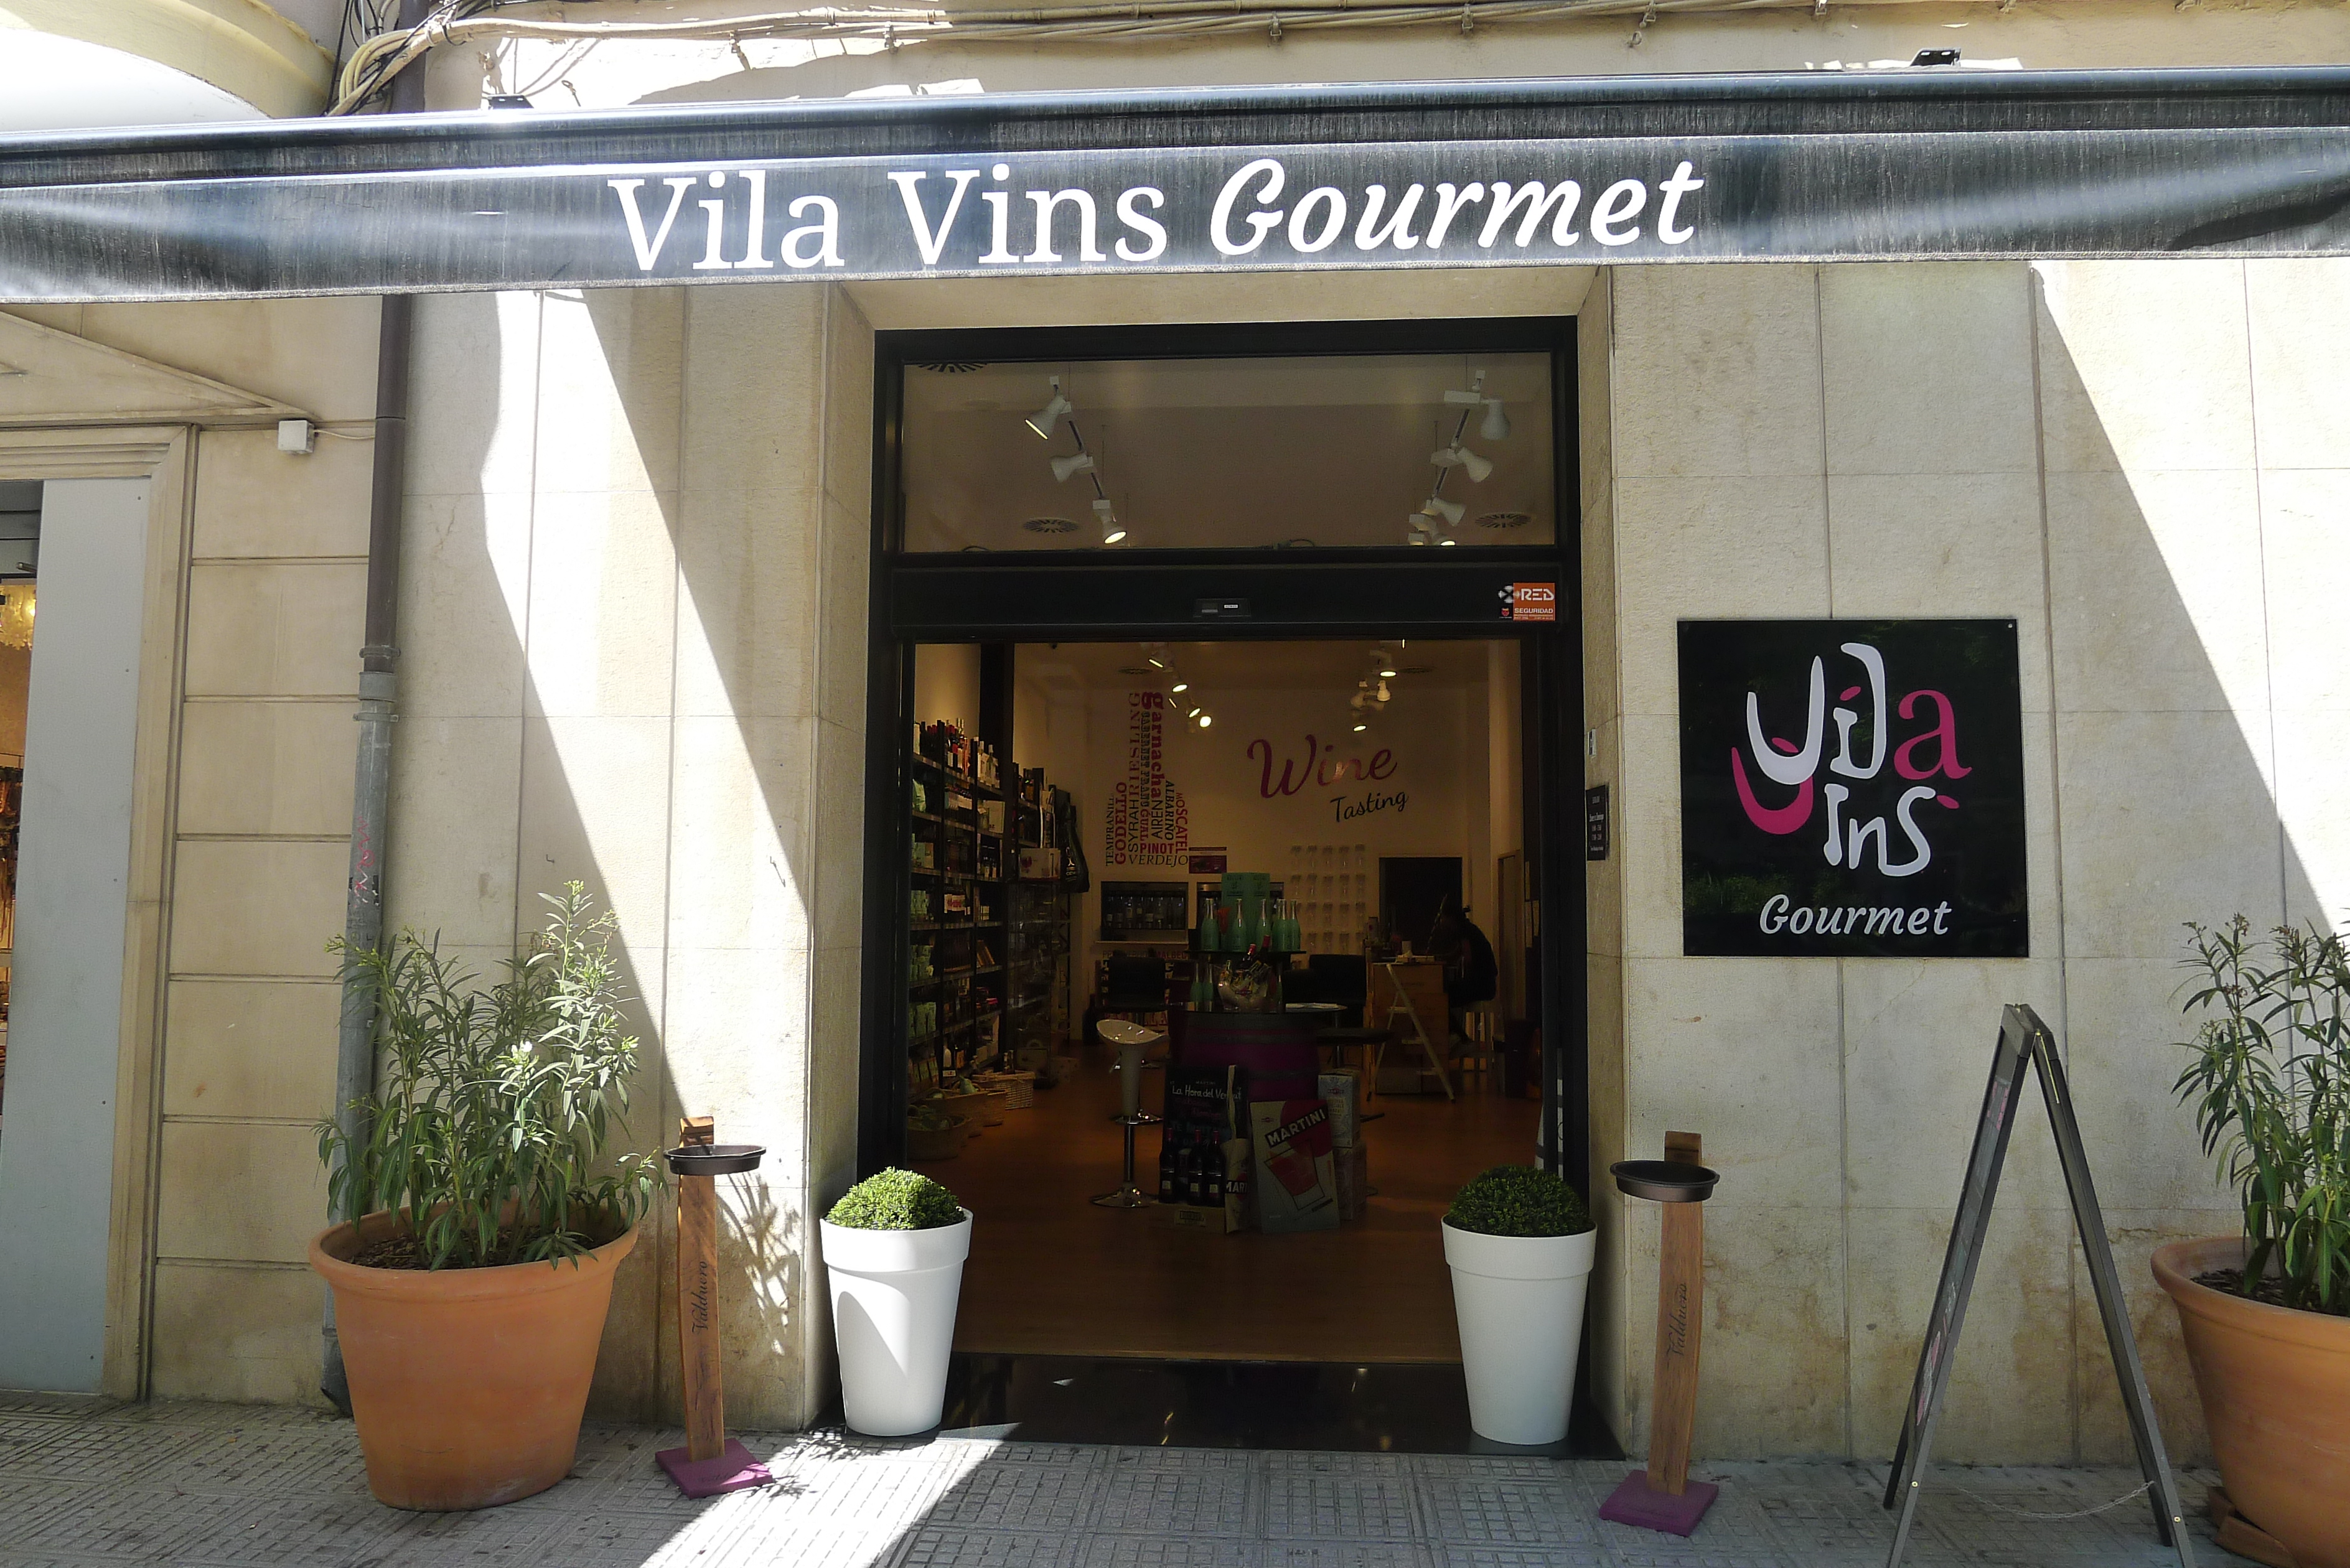 Vila Vins Gourmet especialistas en productos delicatesen y locales de calidad